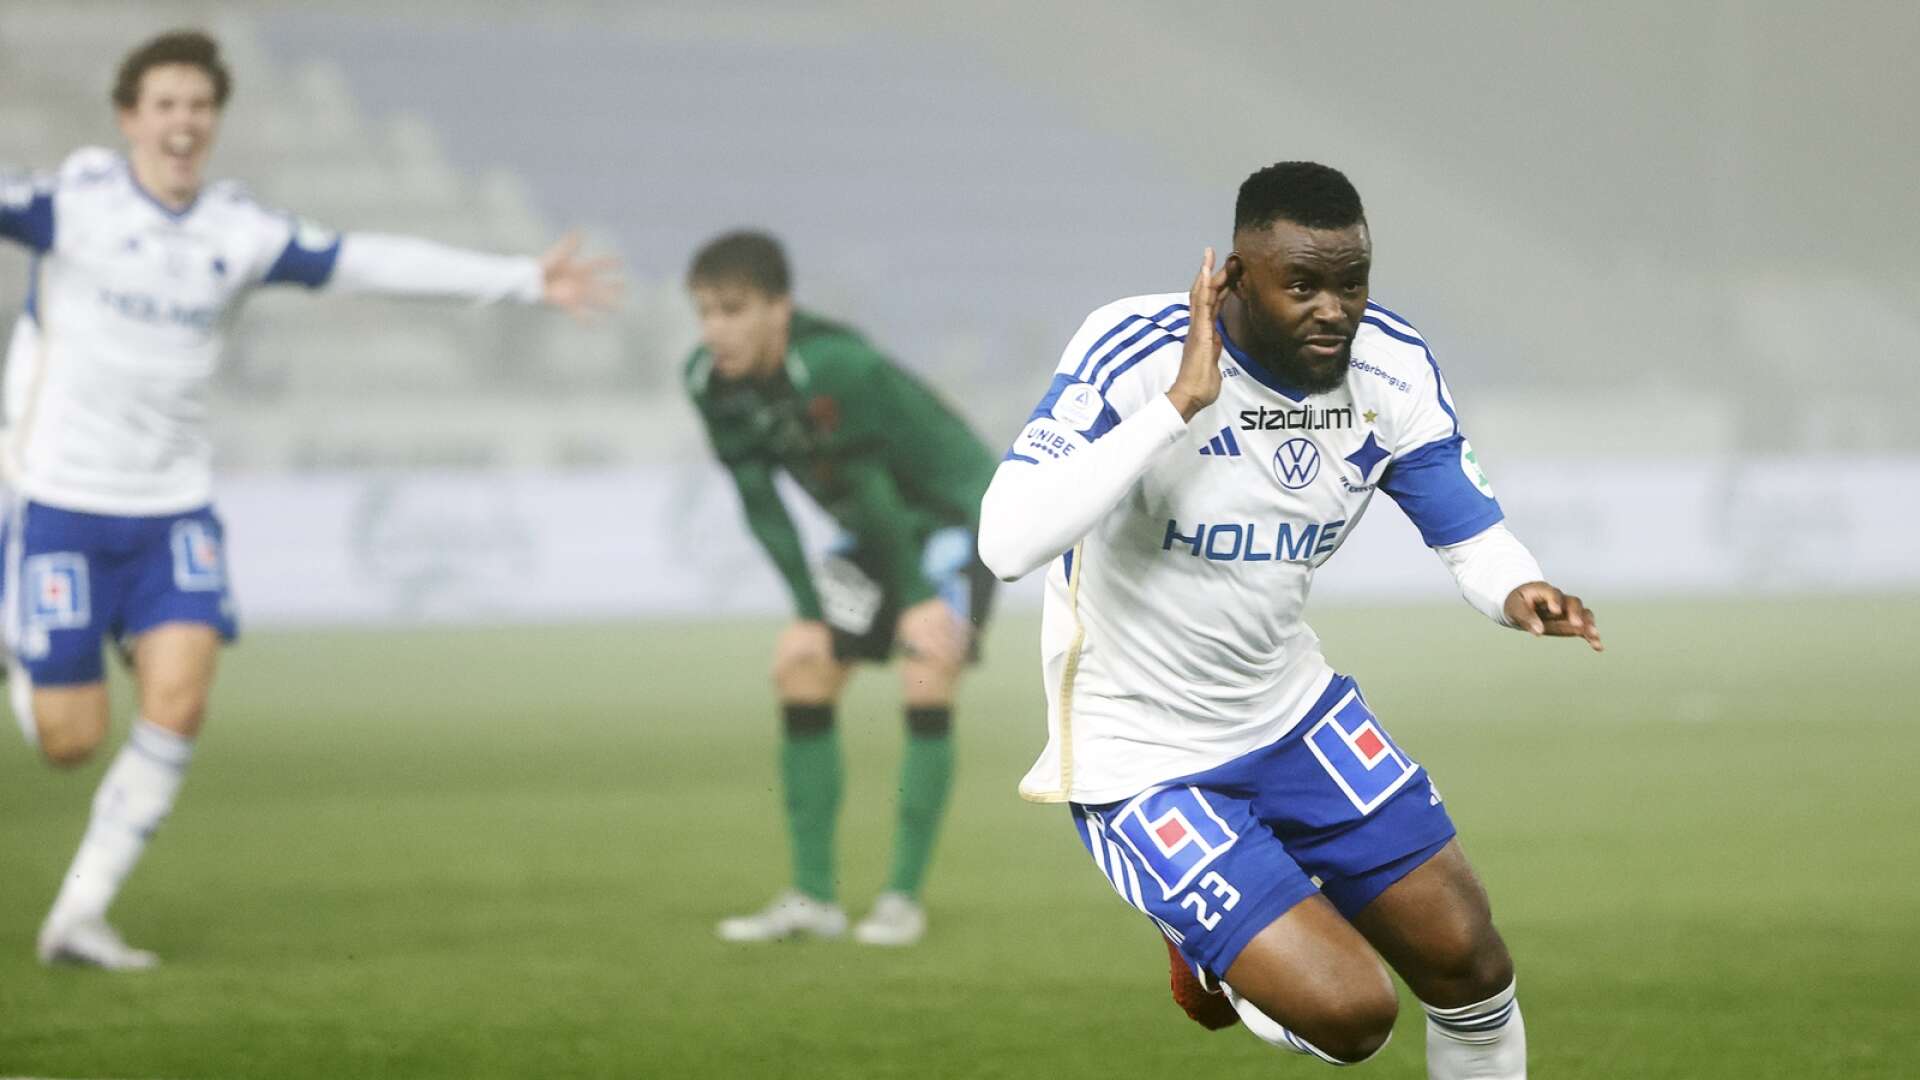 Maic Sema ska enligt källor till NWT vara ytterst nära ett kontrakt med Karlstad Fotboll.